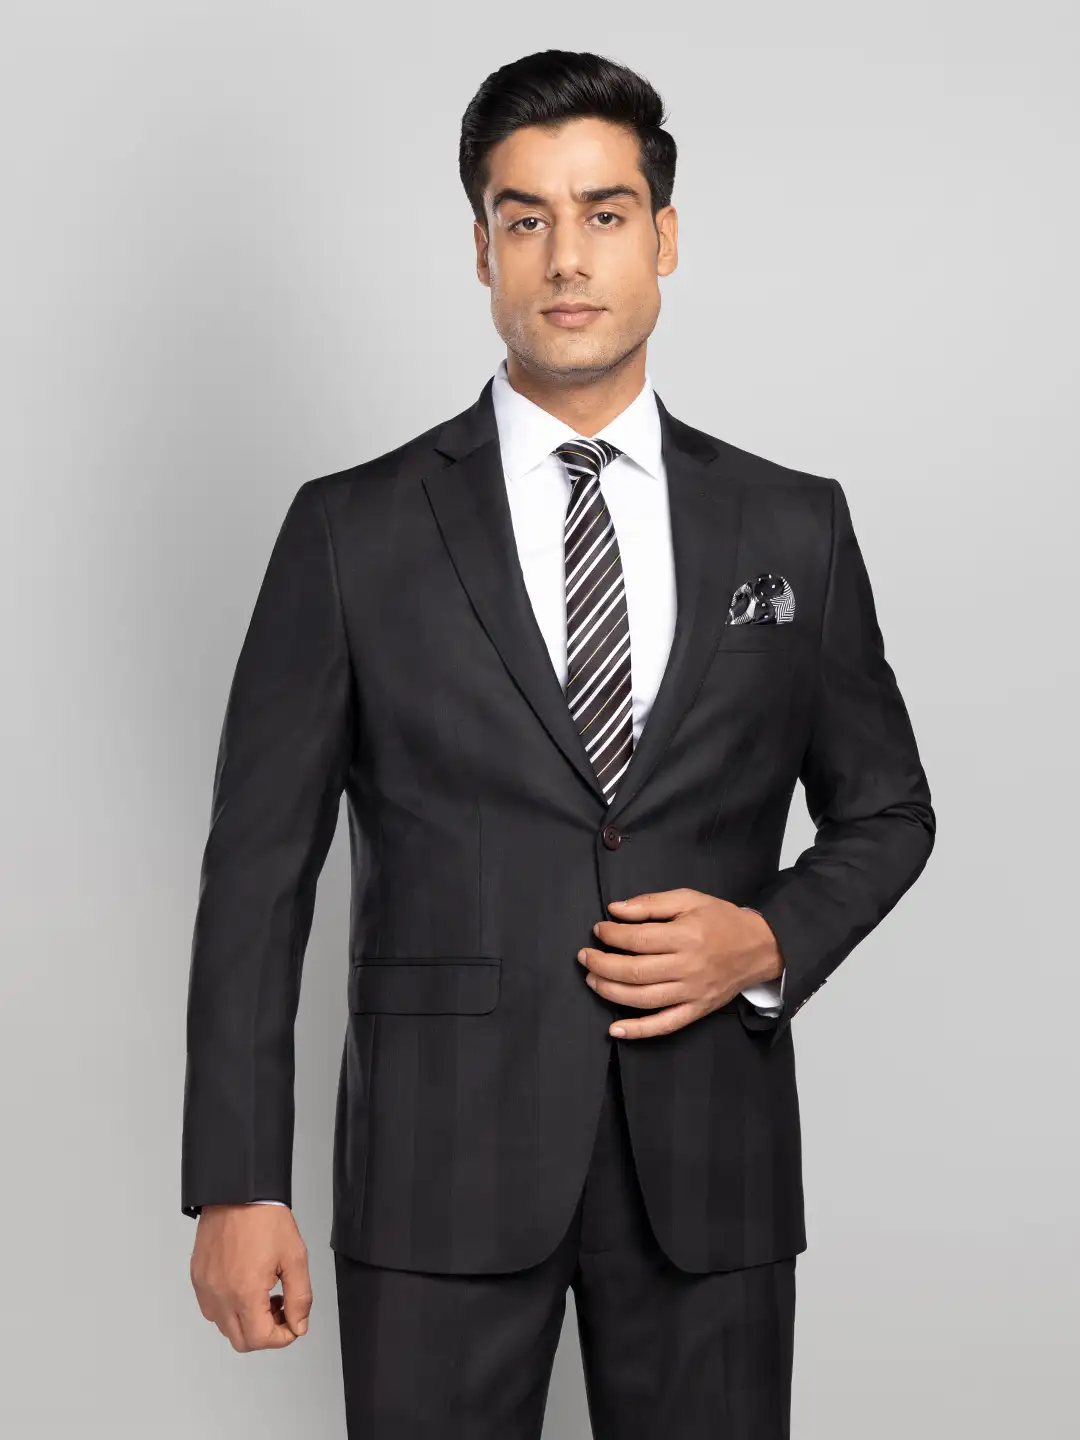 Men's 2 piece Business Suit - Black - P N RAO